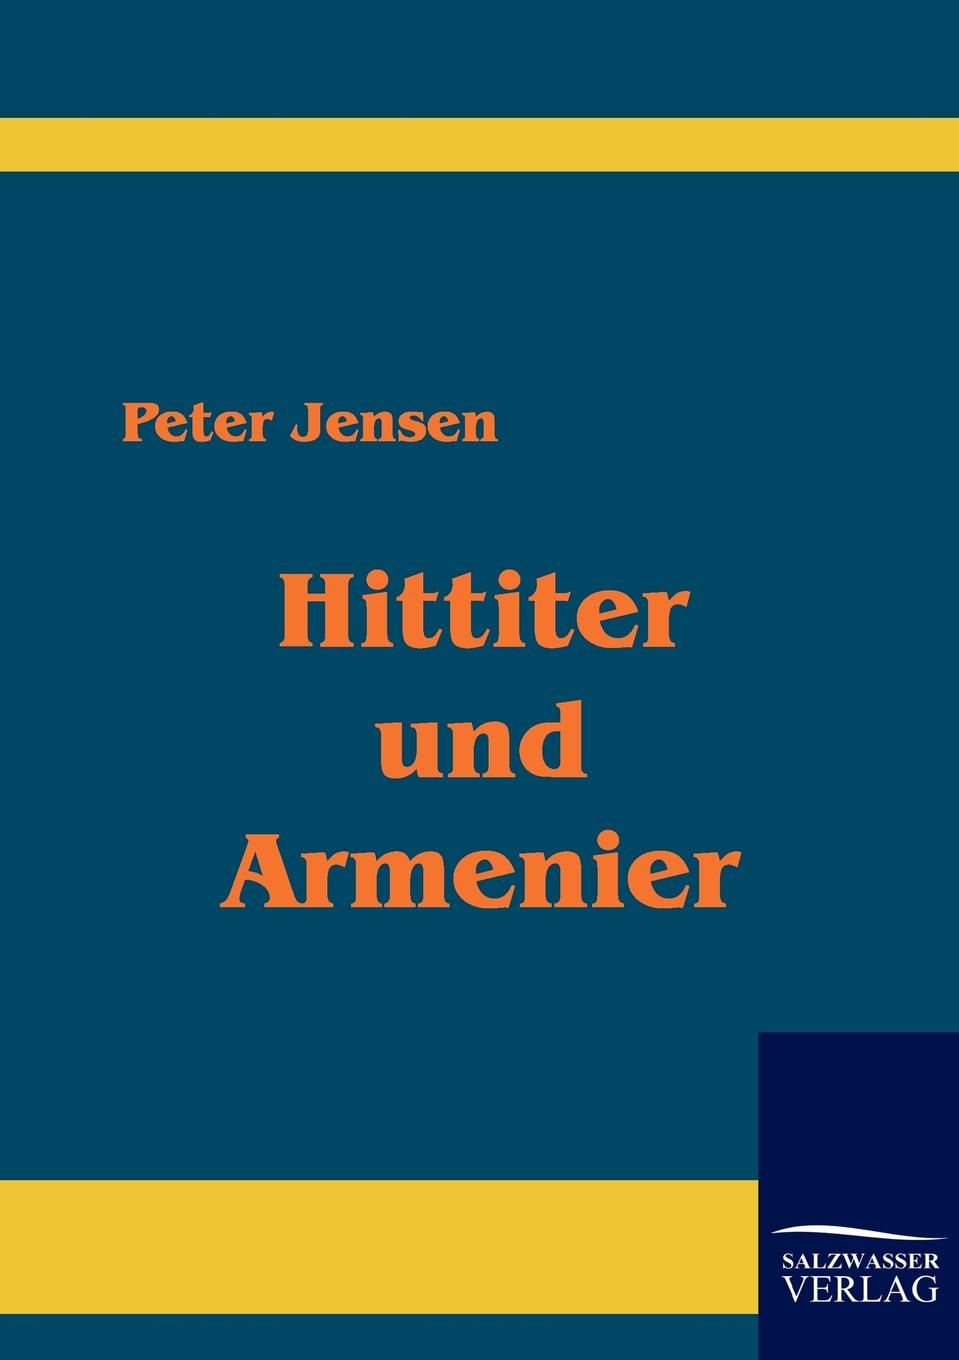 Peter Jensen Hittiter und Armenier